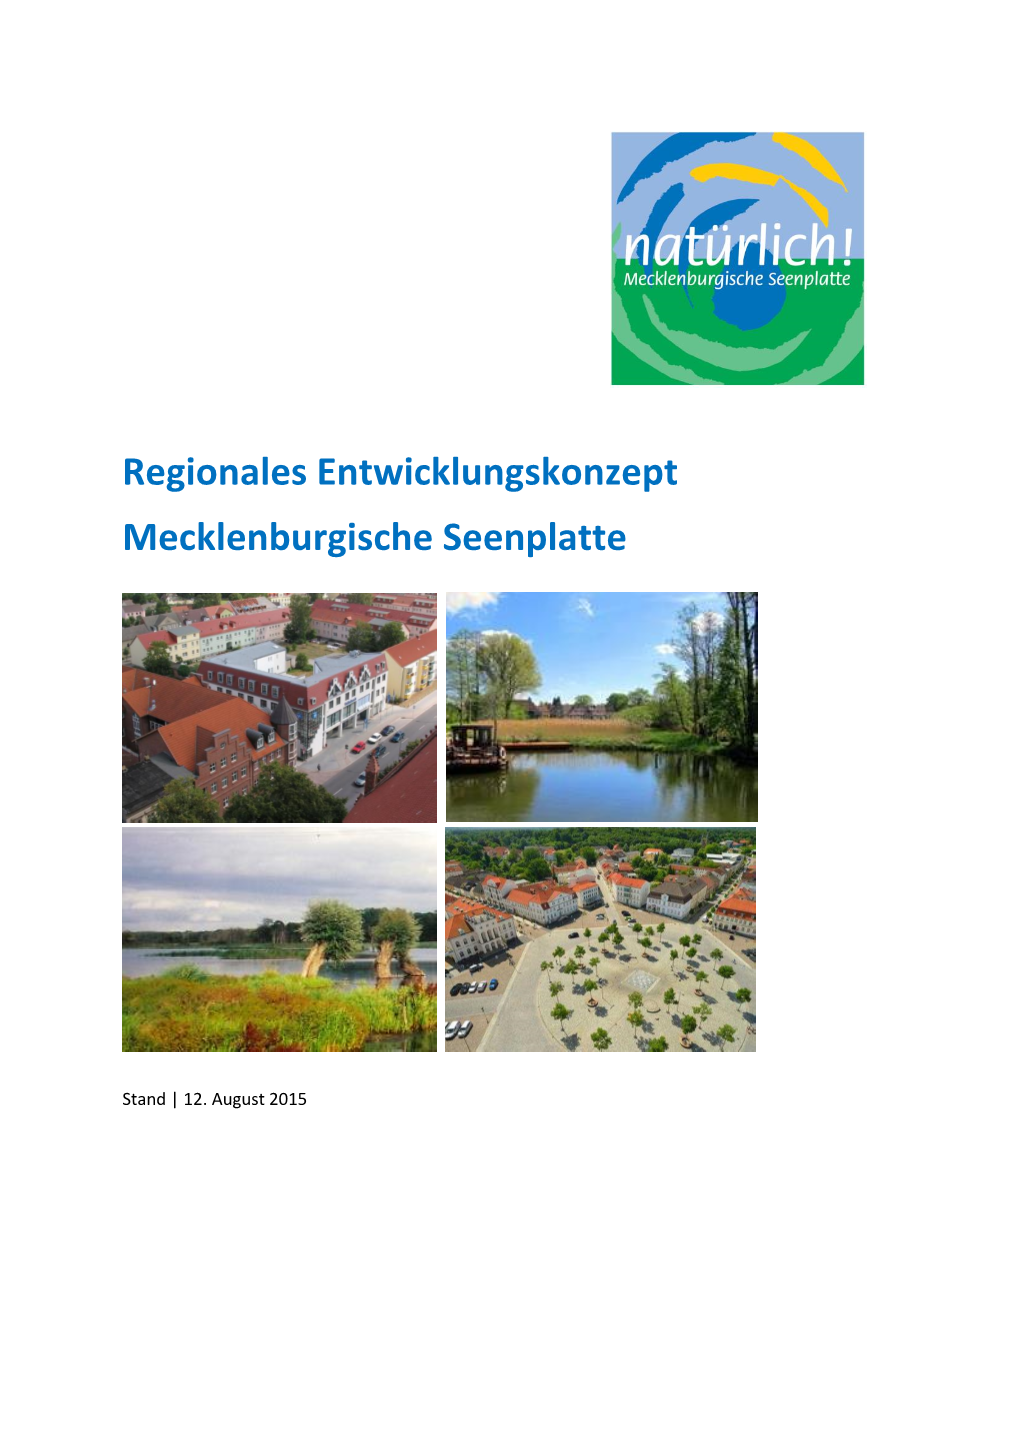 Regionales Entwicklungskonzept Mecklenburgische Seenplatte